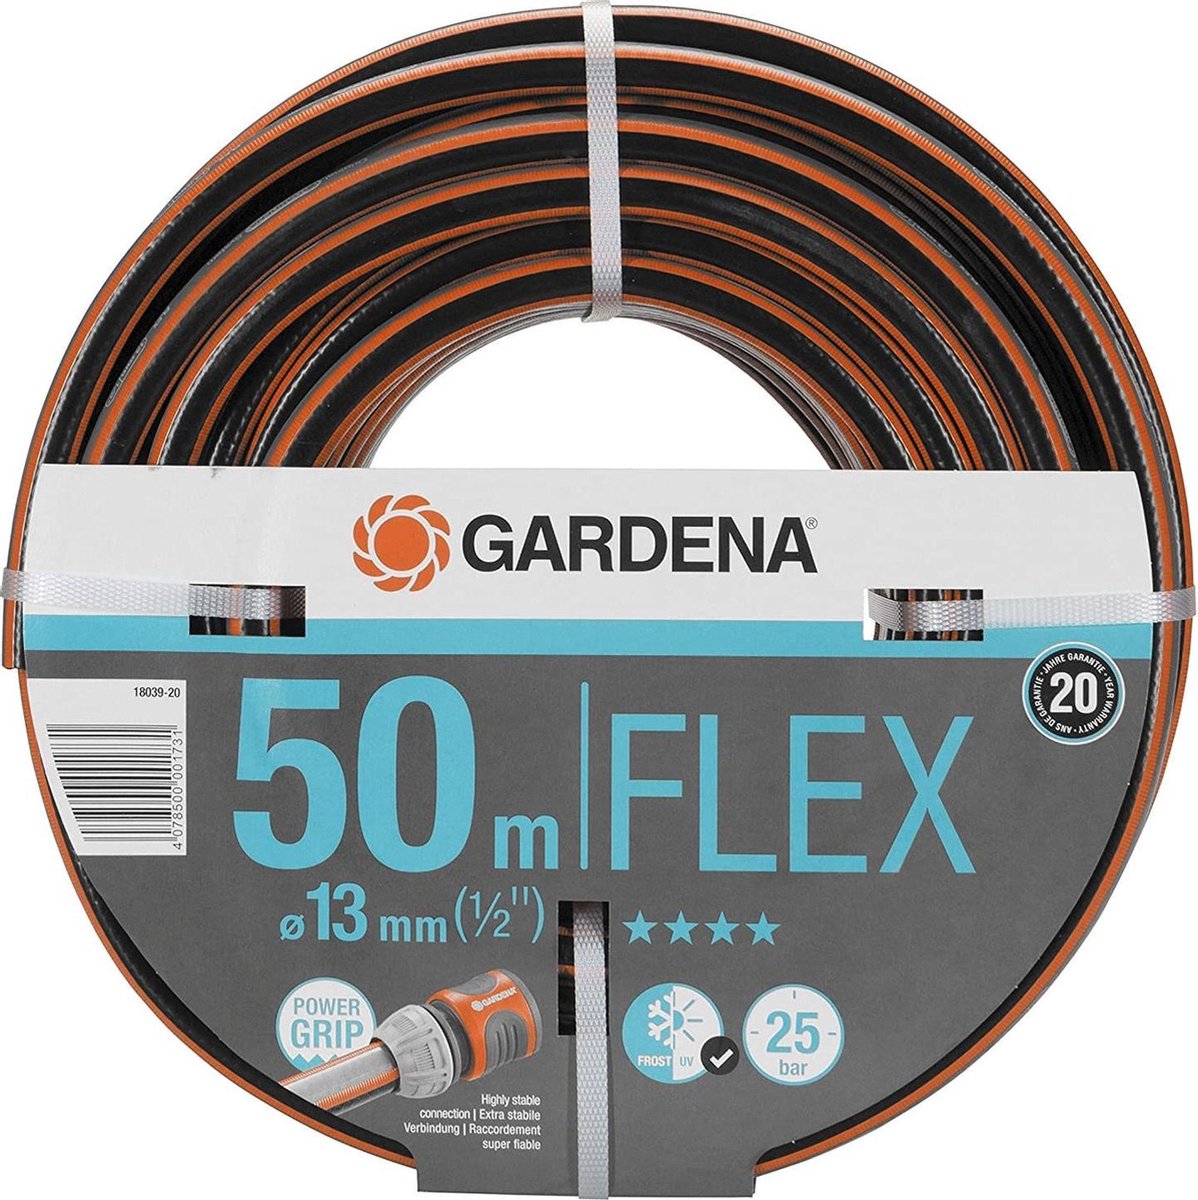 GARDENA - Comfort Flex Tuinslang - 50 Meter - 13 mm - GARDENA